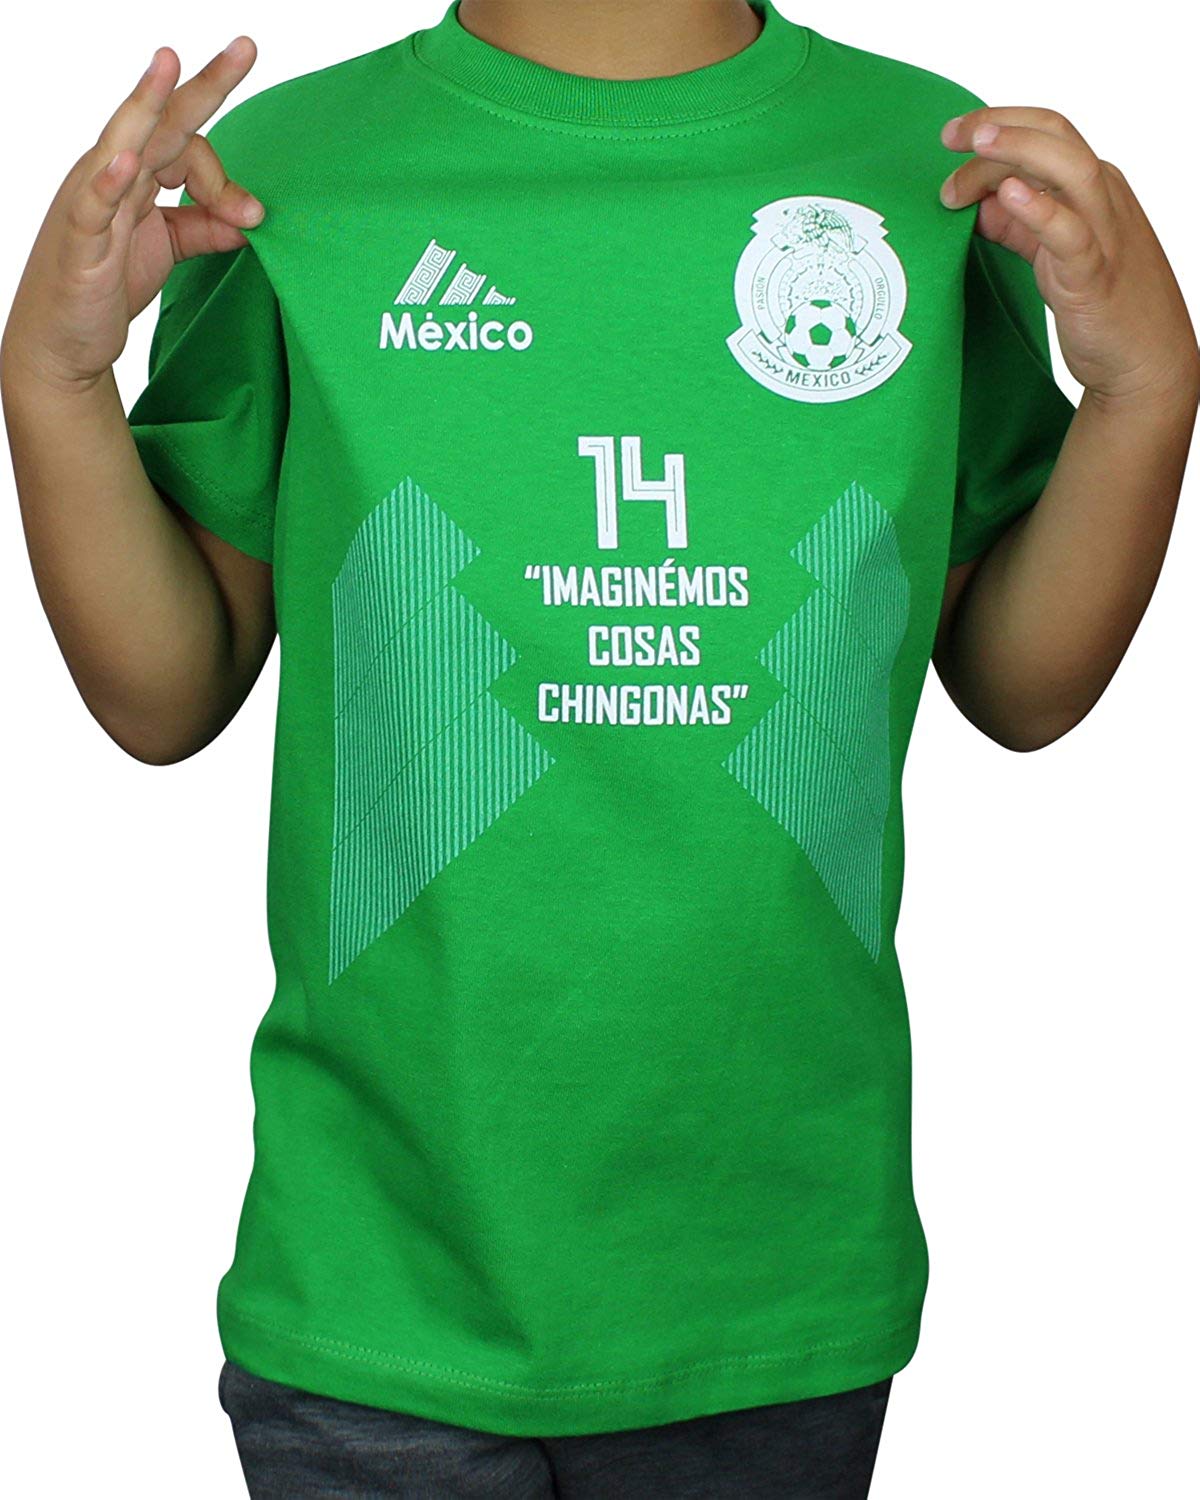 Chicharito Logo - Imaginemos Cosas Chingonas Kids Shirt Chicharito Javier